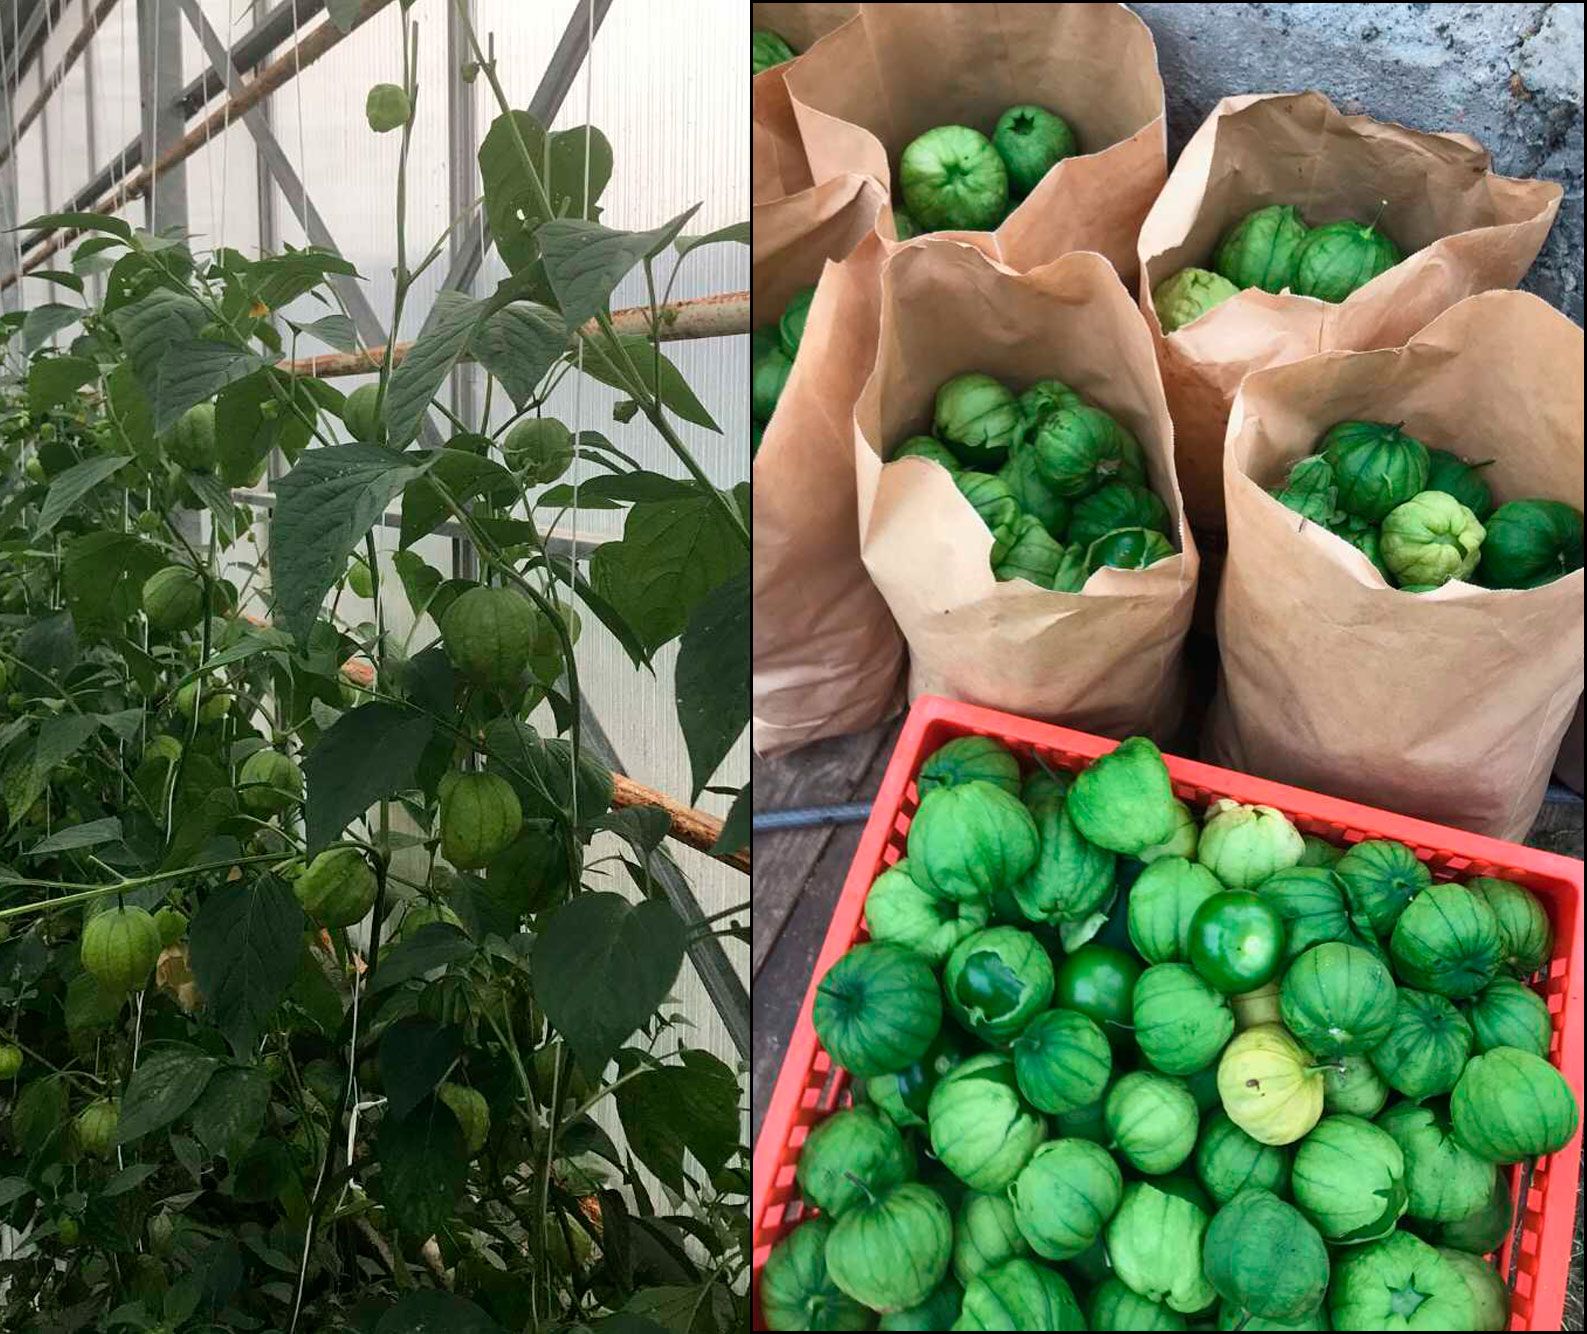 Slik ser tomatilloen ut. De er grønne, cirka like store som en ordinær tomat og har en syrlig smak. Bildene er tatt av Flesjå på Finnøy. 